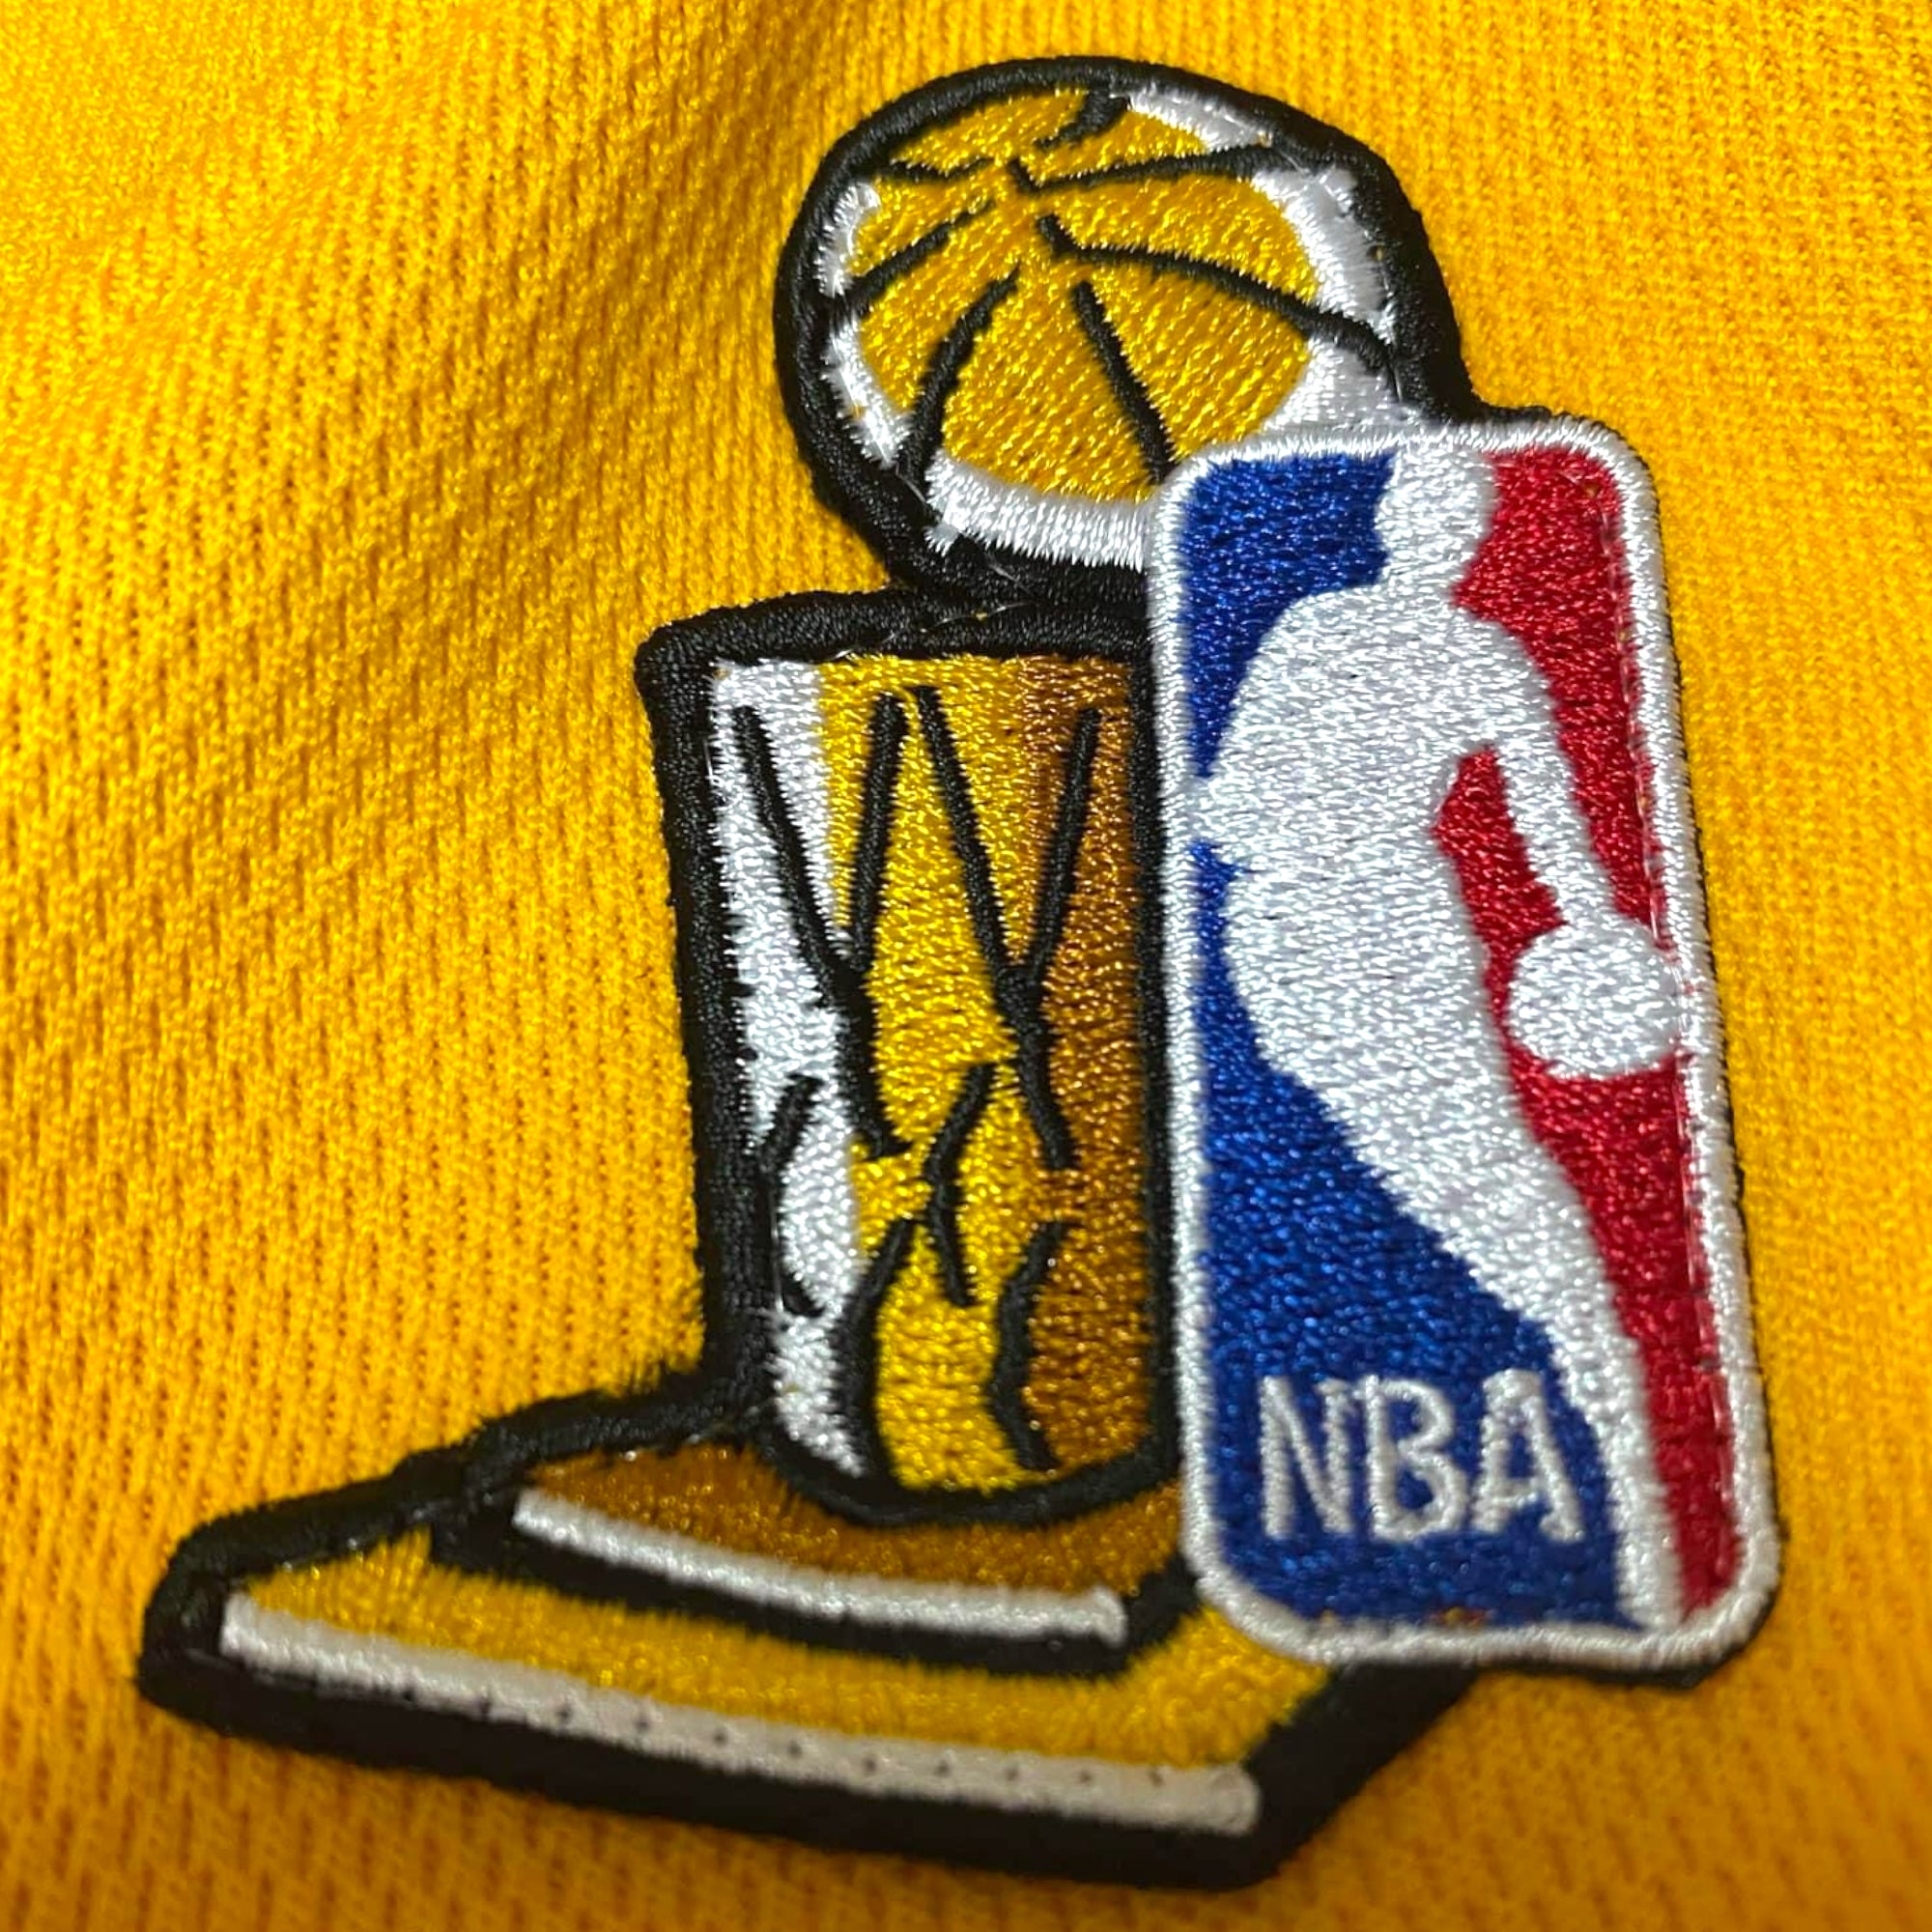 Mitchell & Ness Kobe Bryant LA Lakers 2001-2002 NBA Finals Authentic Jersey - Yellow